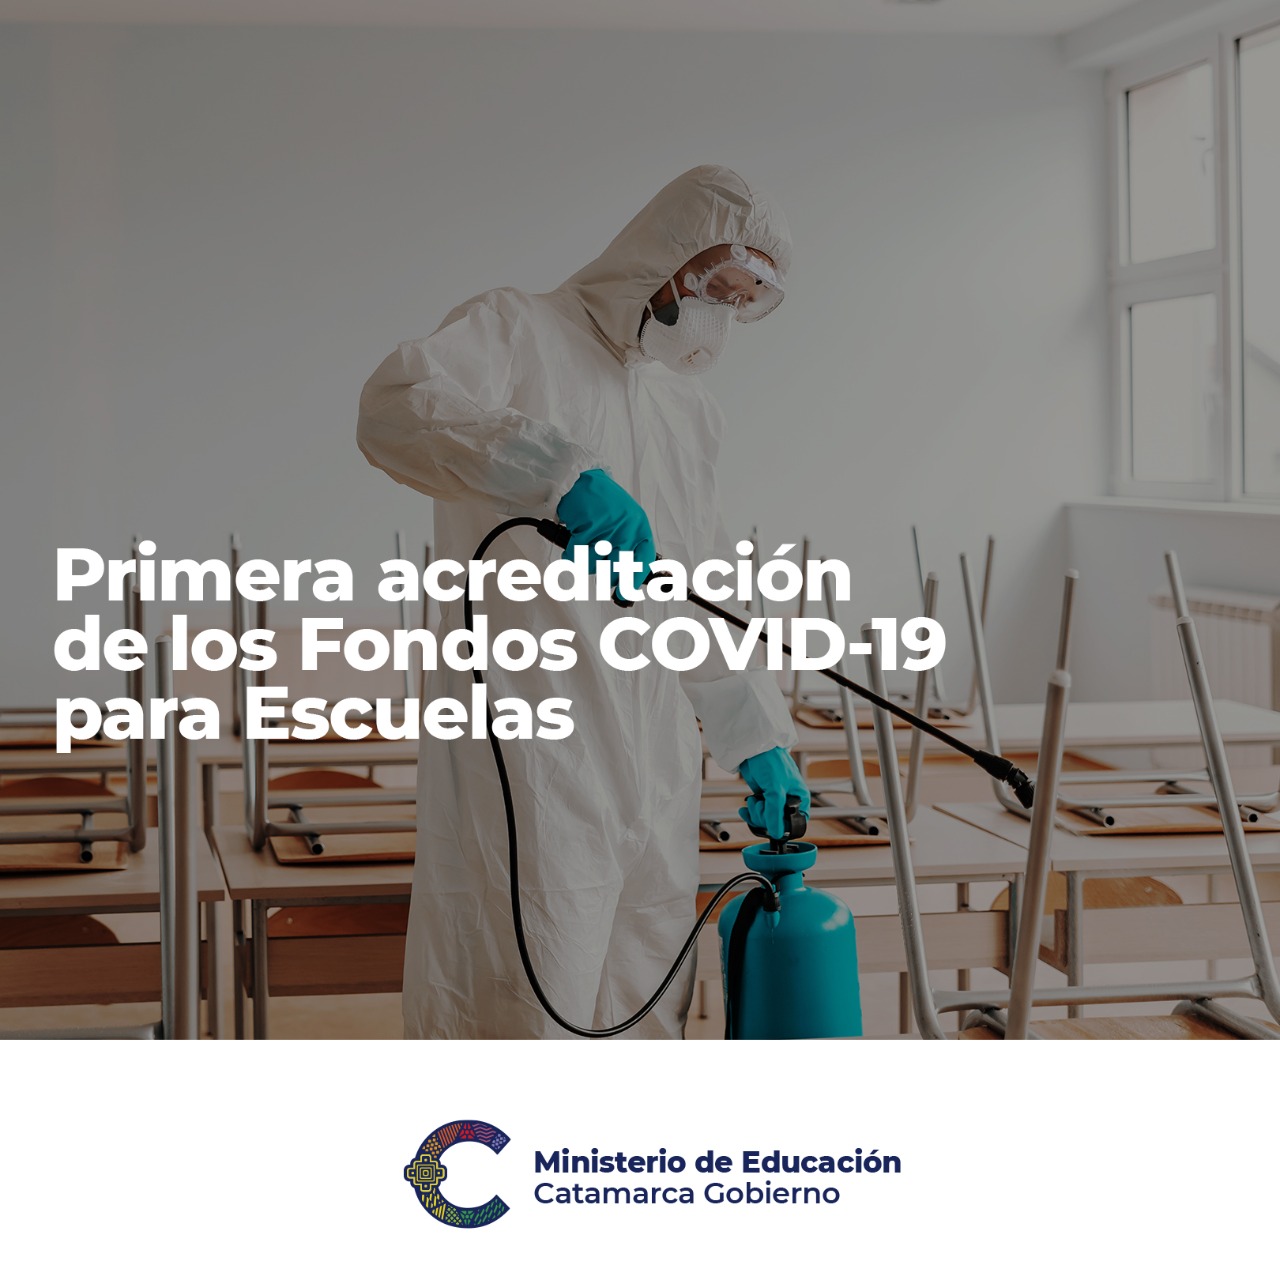 Primera acreditacion de los Fondos COVID-19 para Escuelas